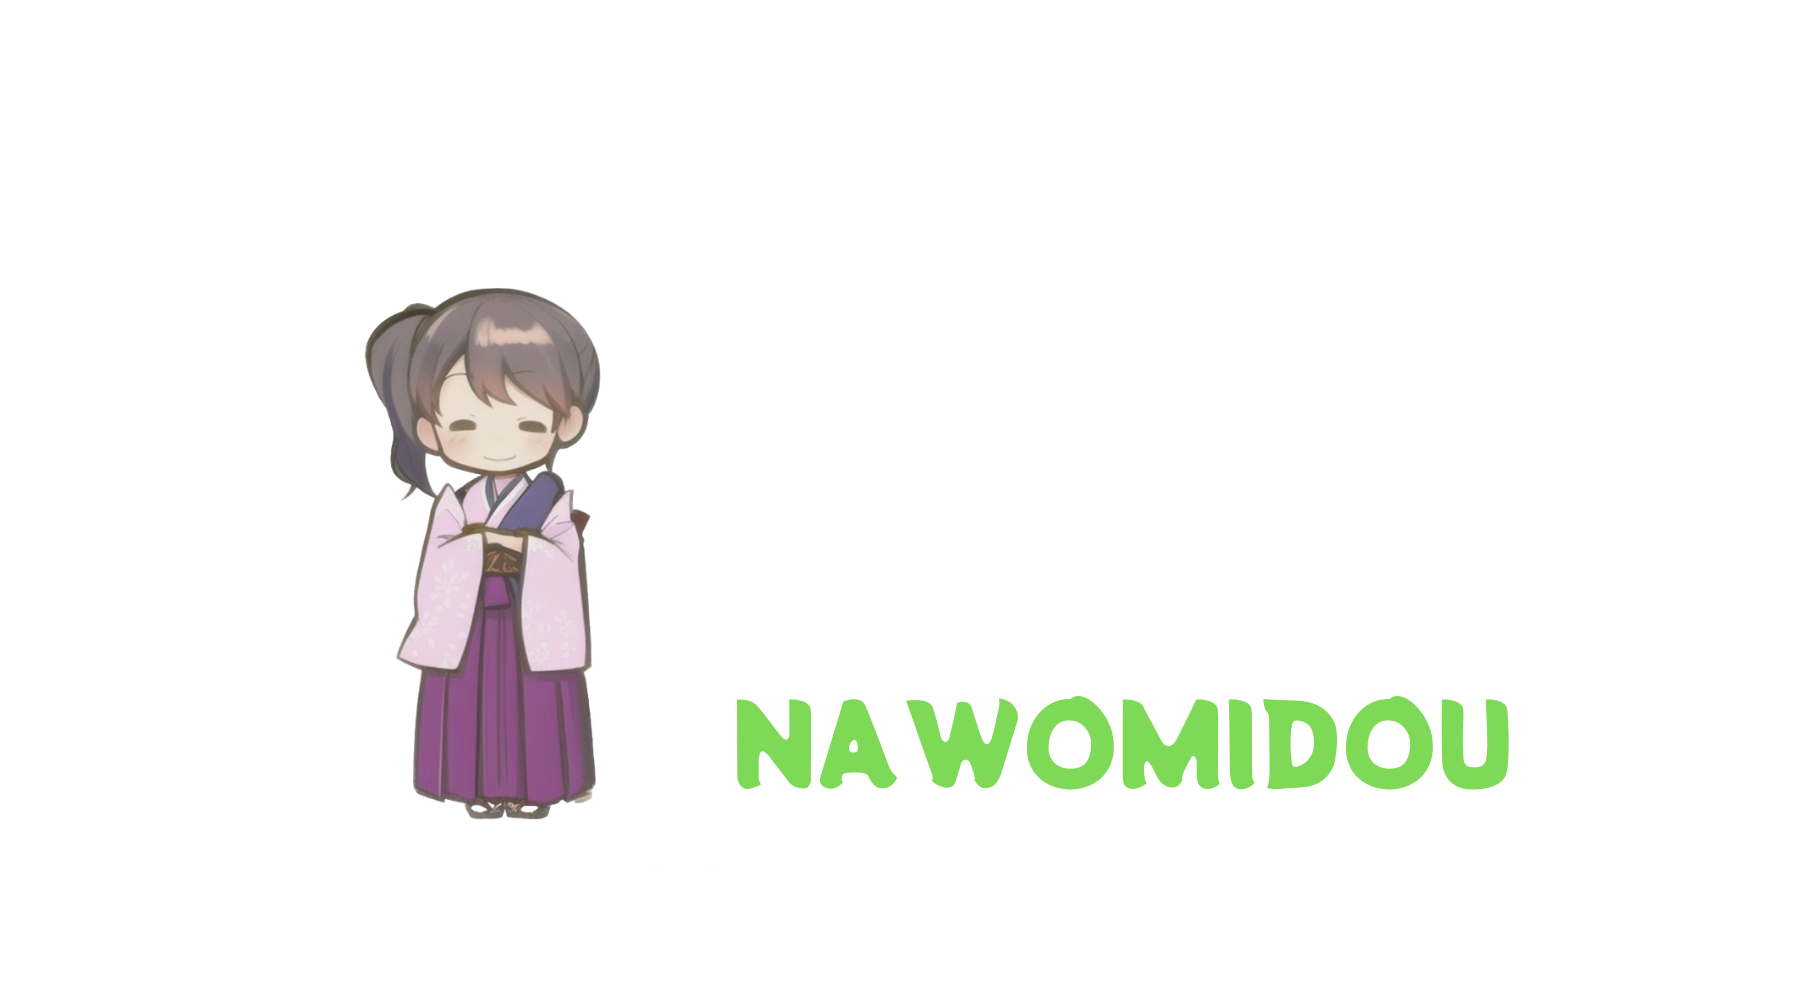 ショップ名変更します。「NAWOMIDOU」が新しい名前。ChatGPTに解説してもらいましょう。